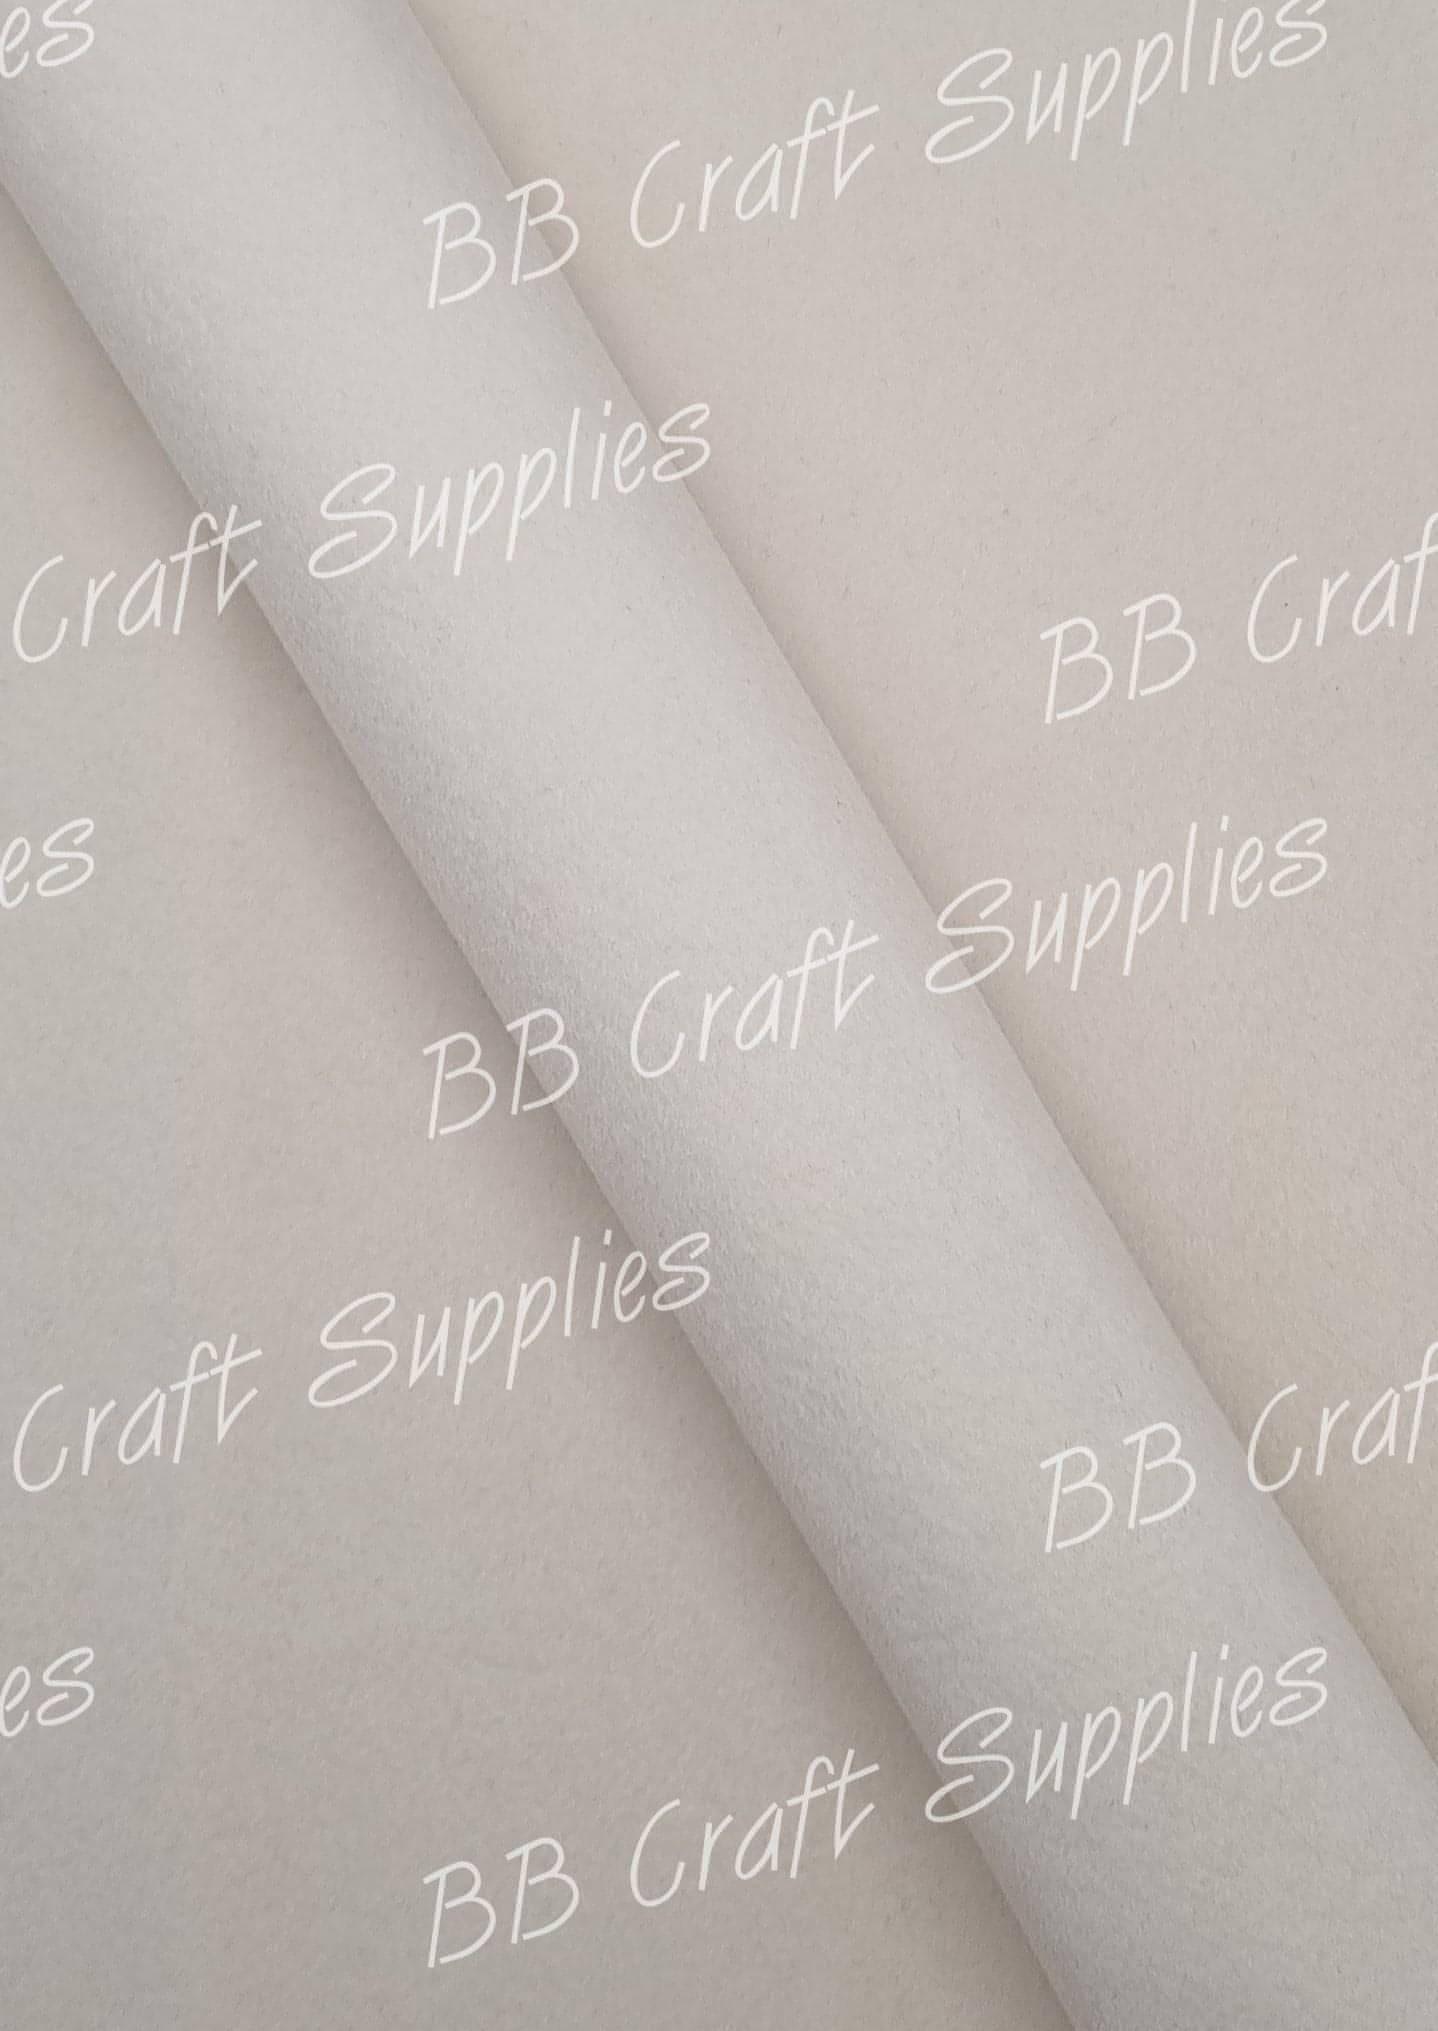 Premium Velvet Fabric - White - crushed, soft, velvet - Bare Butler Faux Leather Supplies 